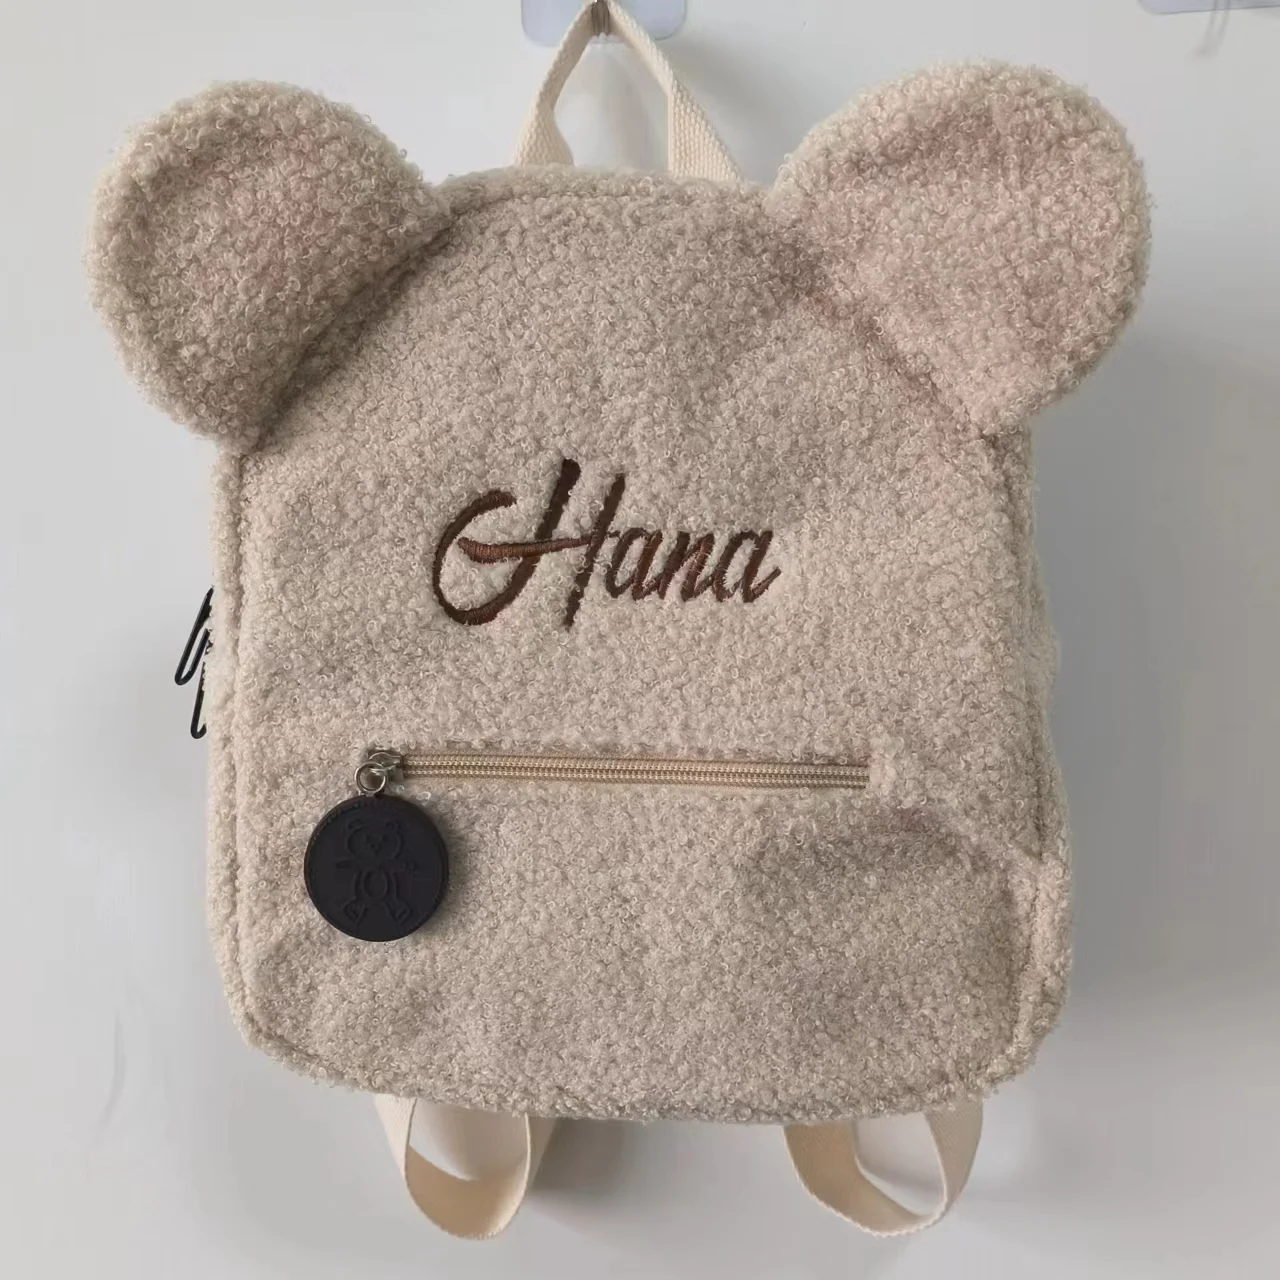 Roztomilá medvěd plyš batoh vyšívané jméno podzim zima děti outdoorové bedra pytle nestandartní personalizované dětské dar pytle